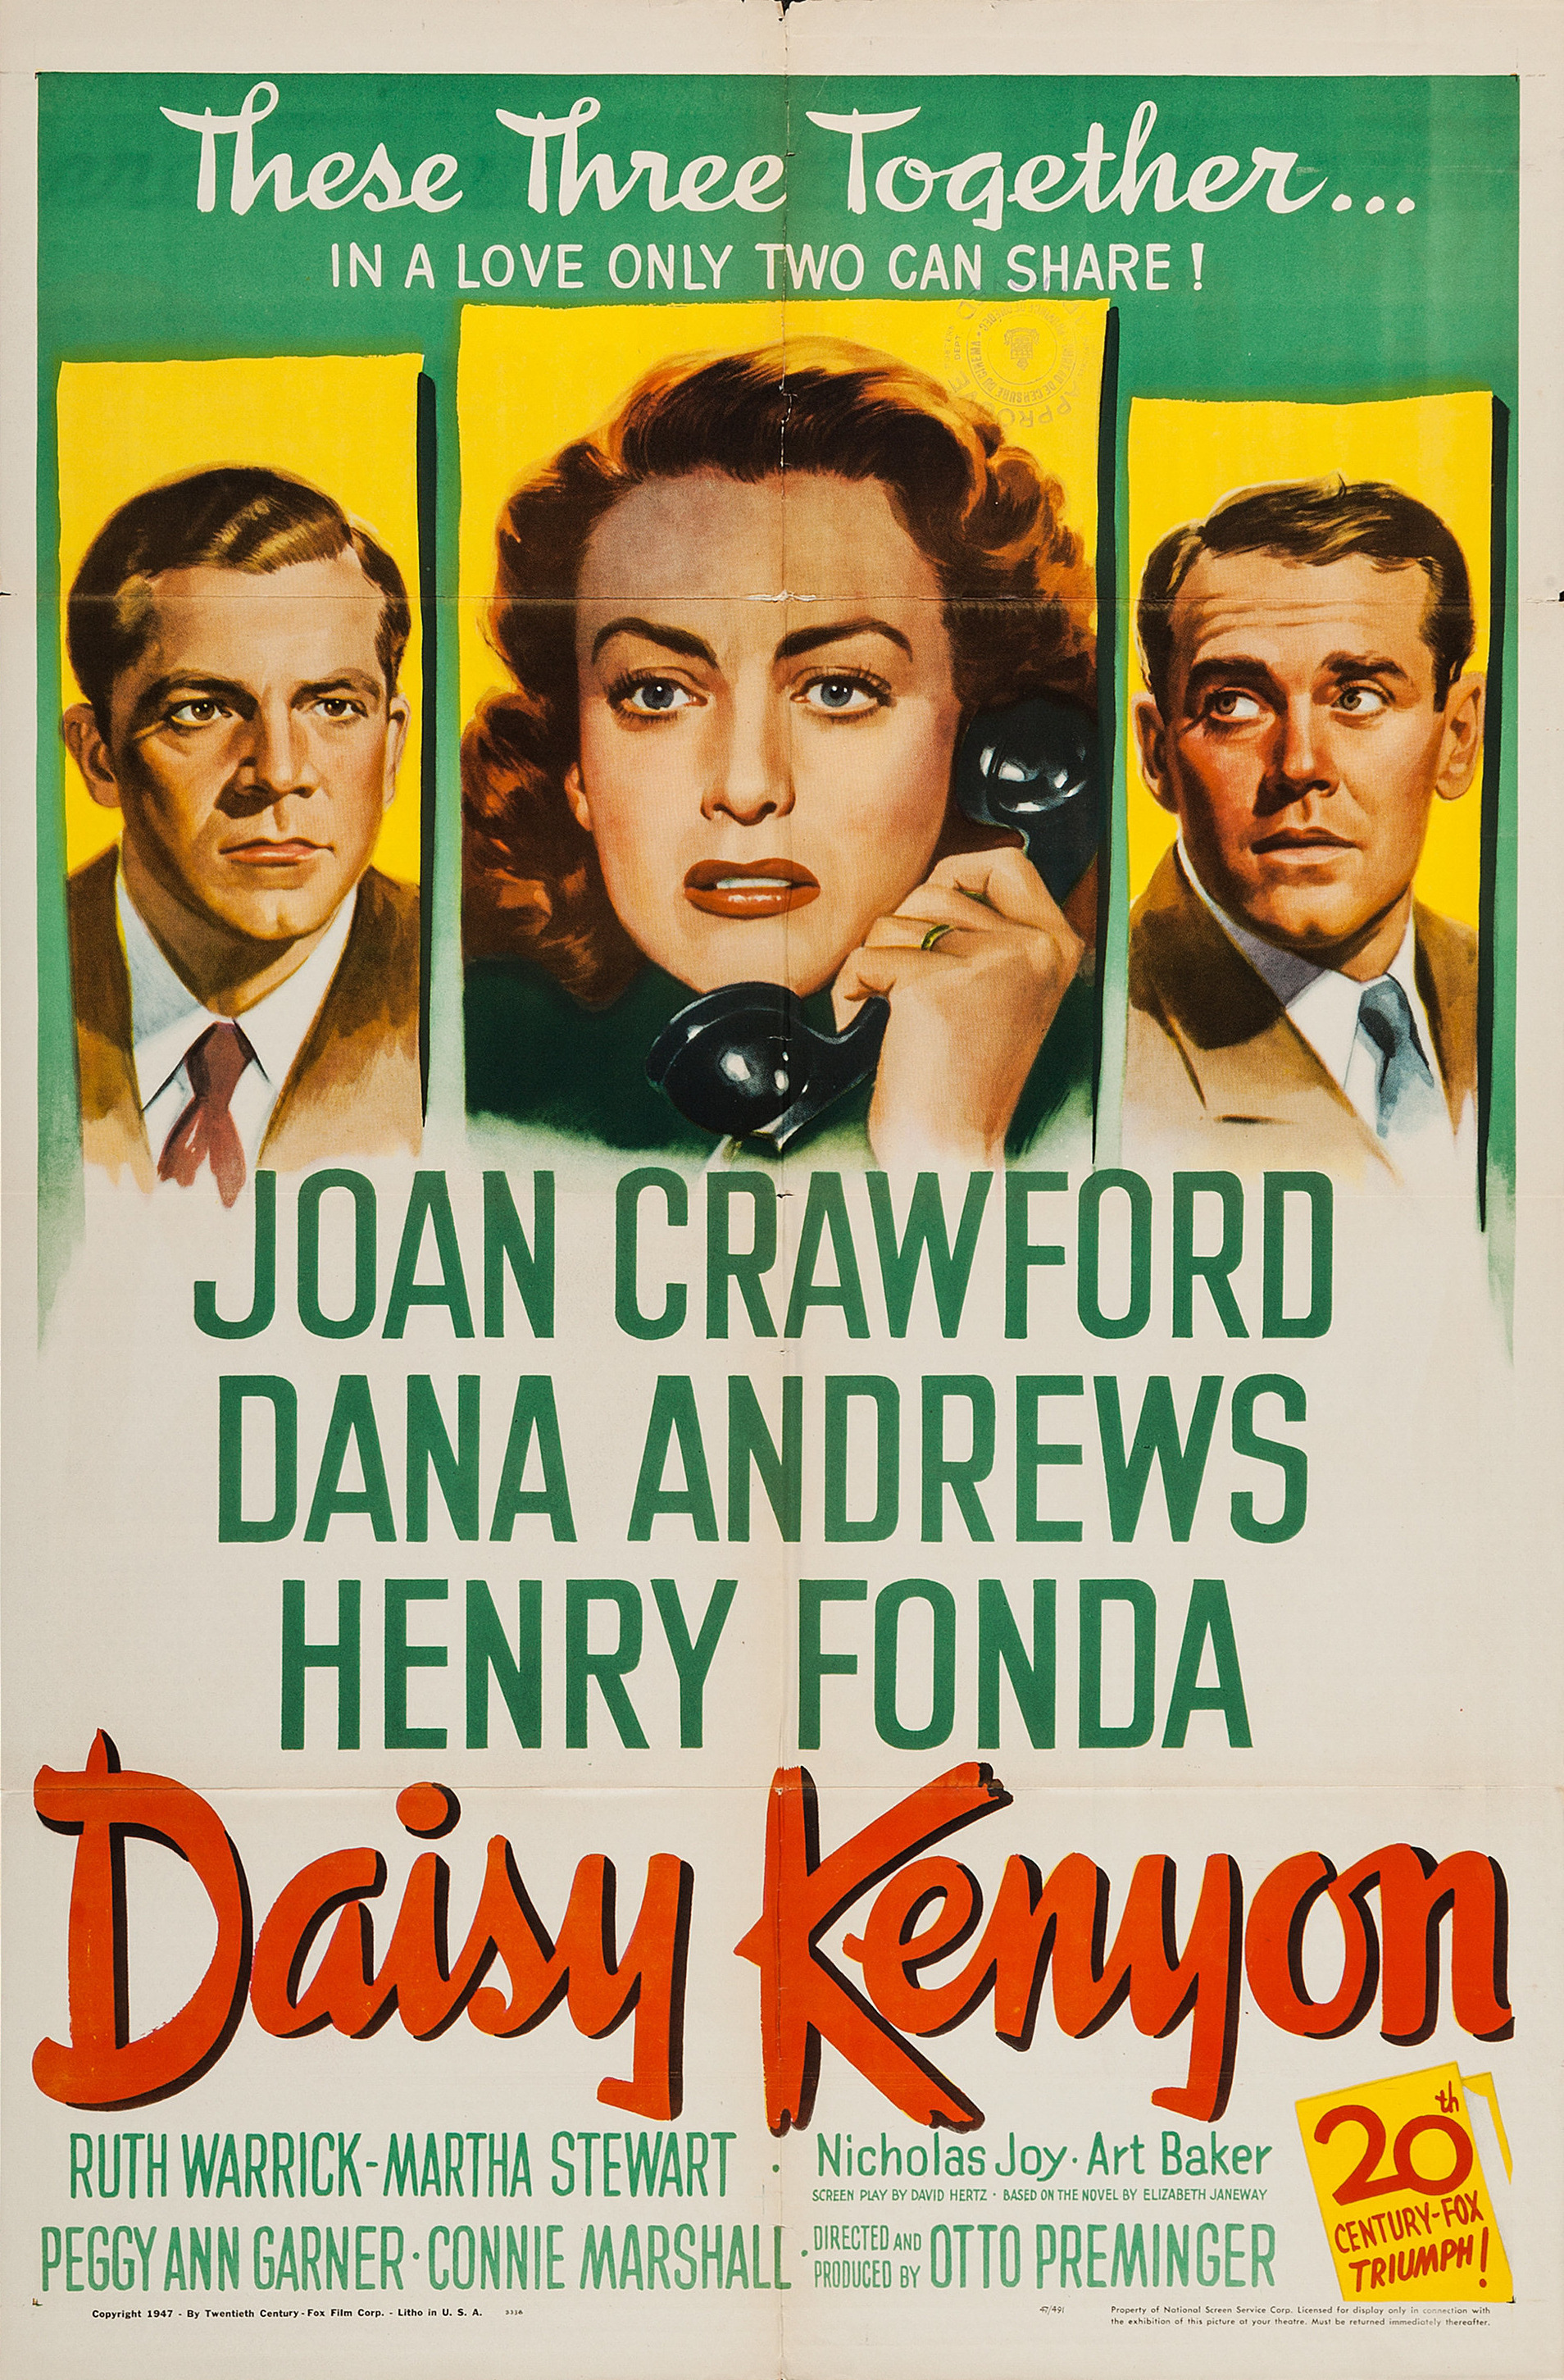 Mega Sized Movie Poster Image for Daisy Kenyon 